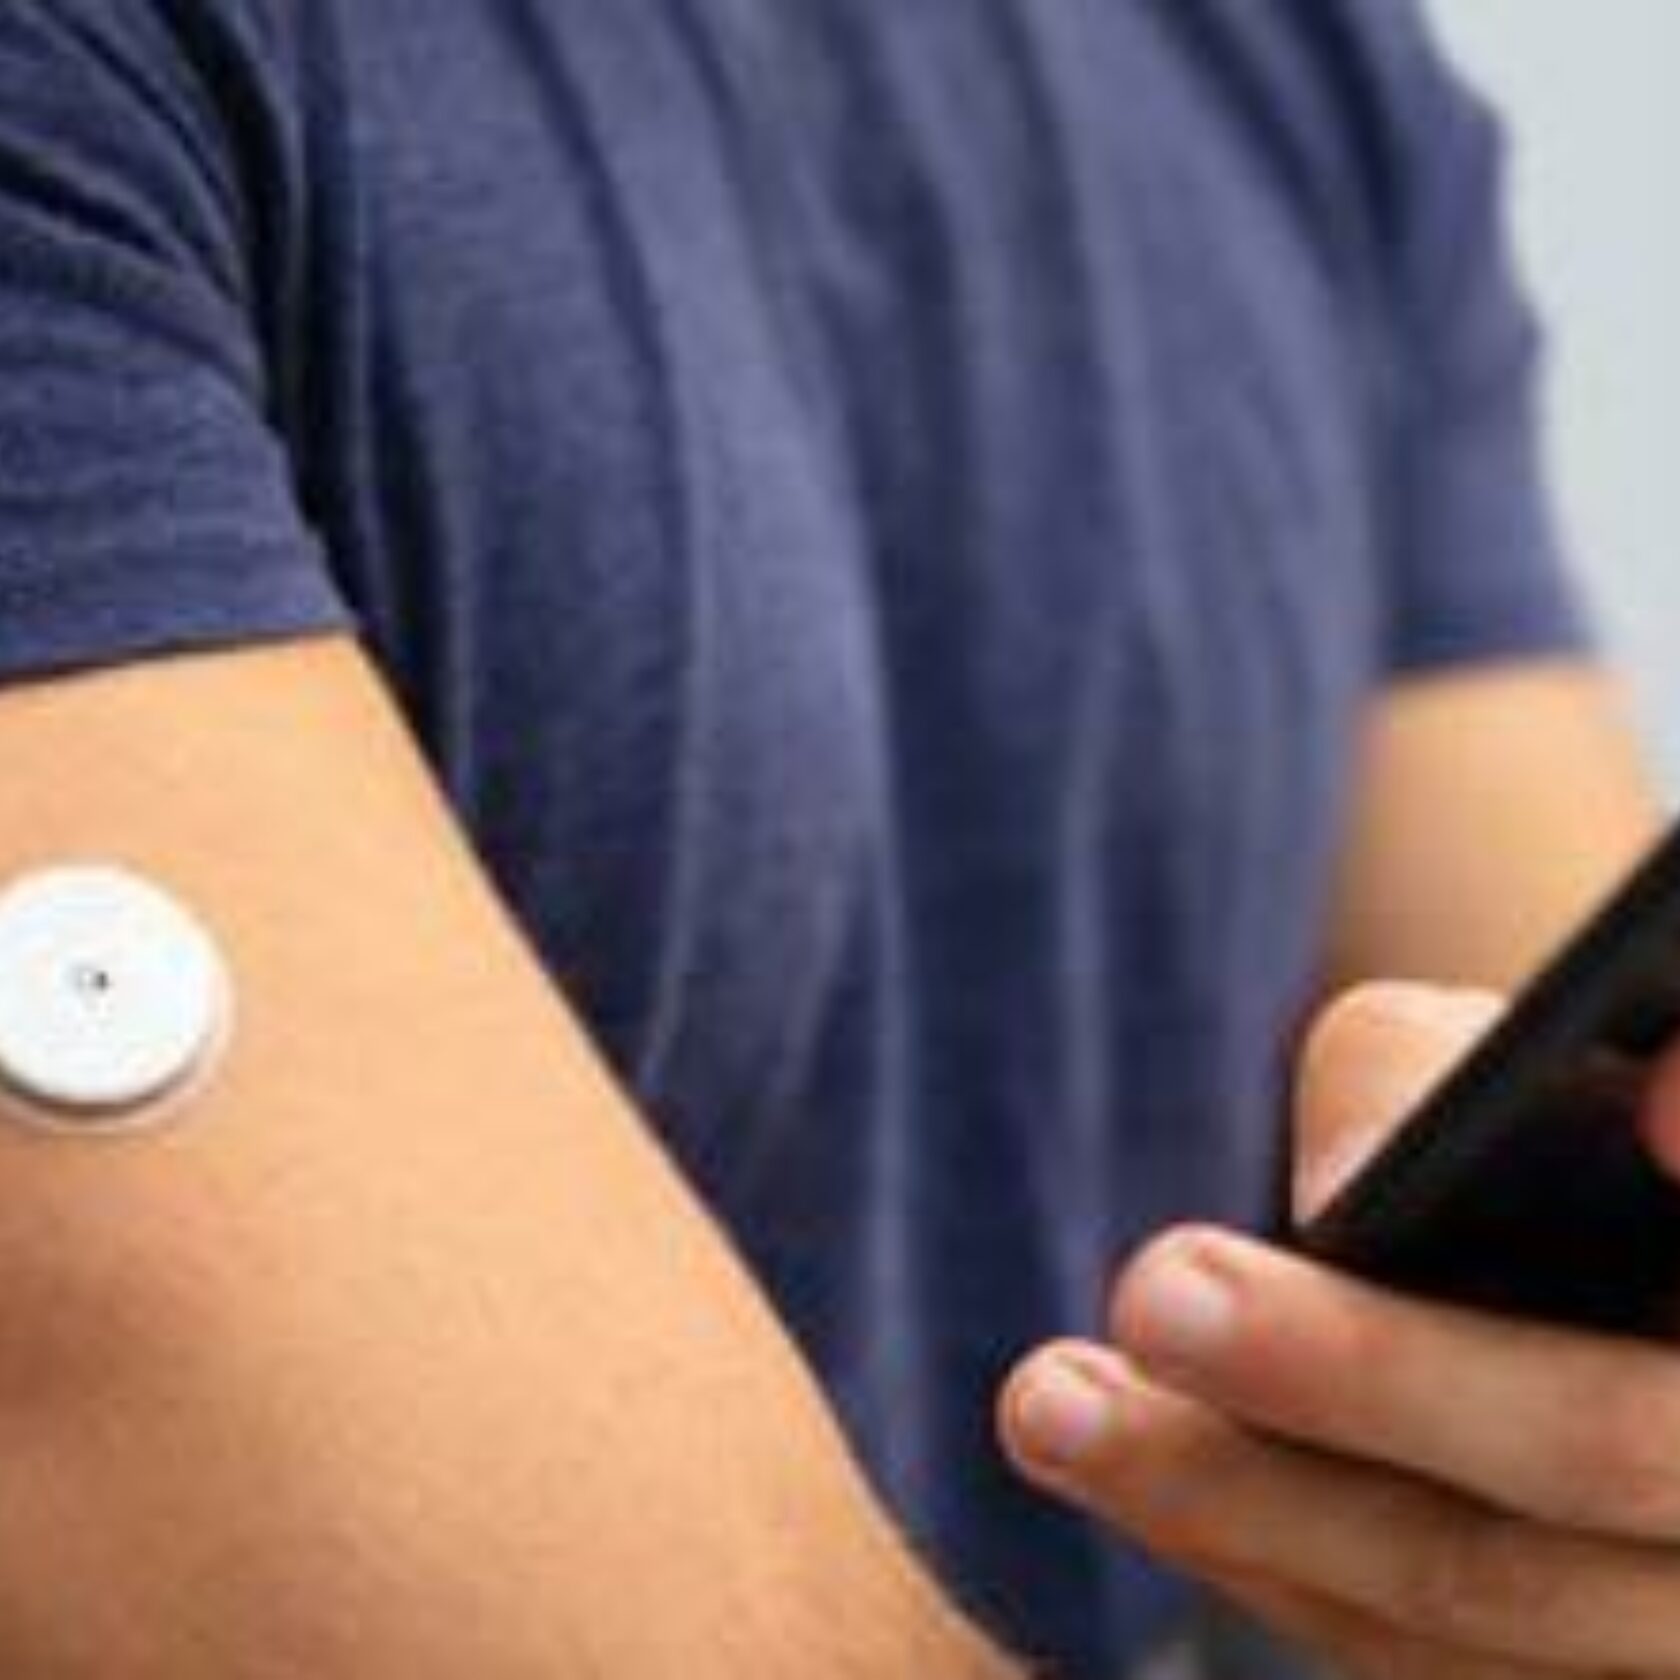 Mann hat ein CGM-Gerät zur Blutzuckermessung am Oberarm und kontrolliert seinen Blutzucker mittels Smartphone.